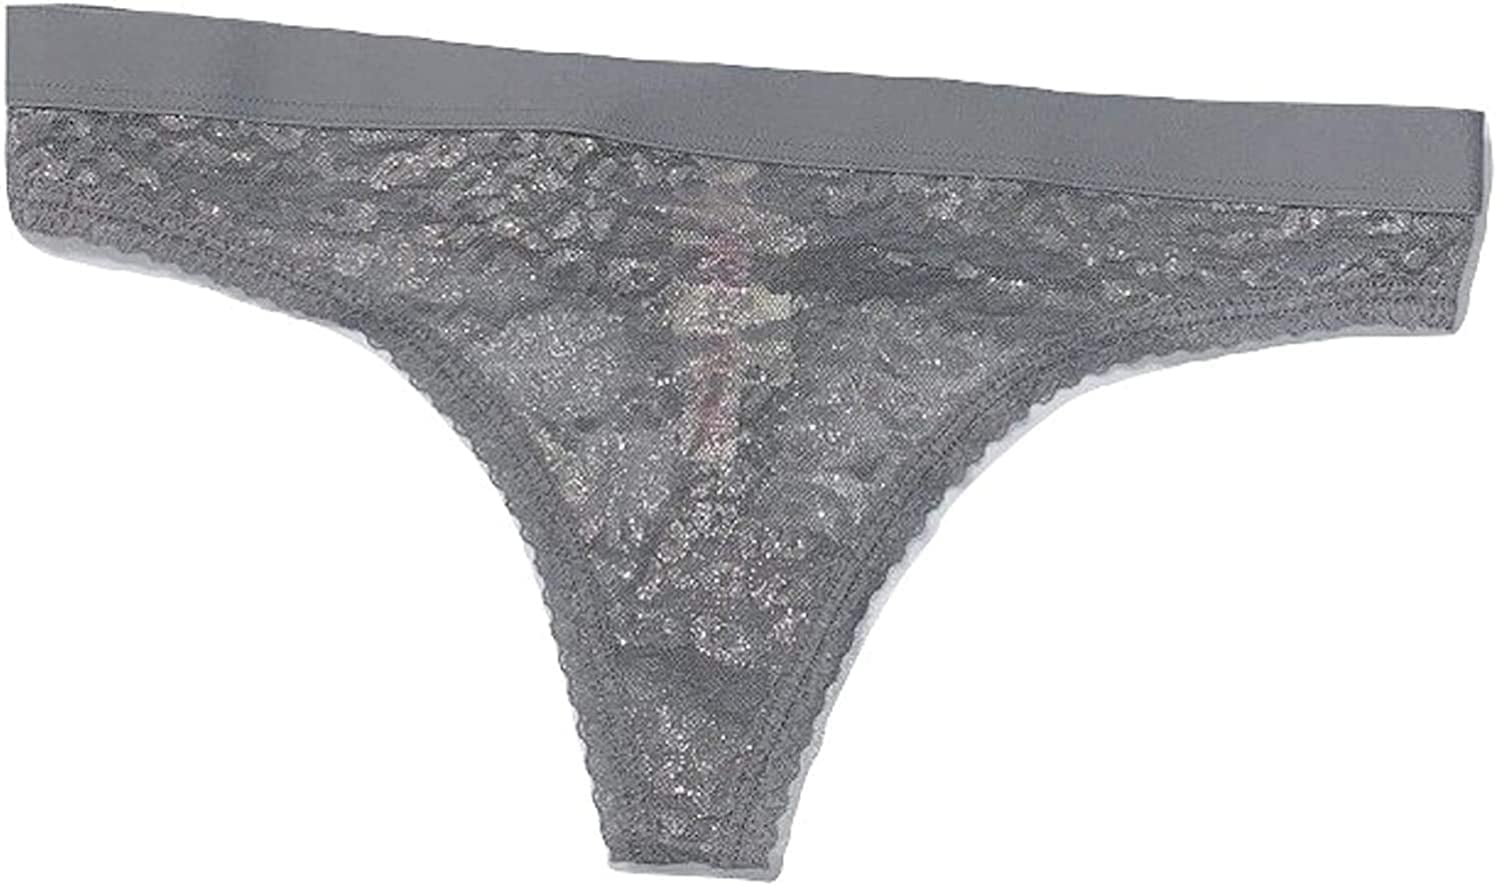 Closet panties showing off thong fan photo